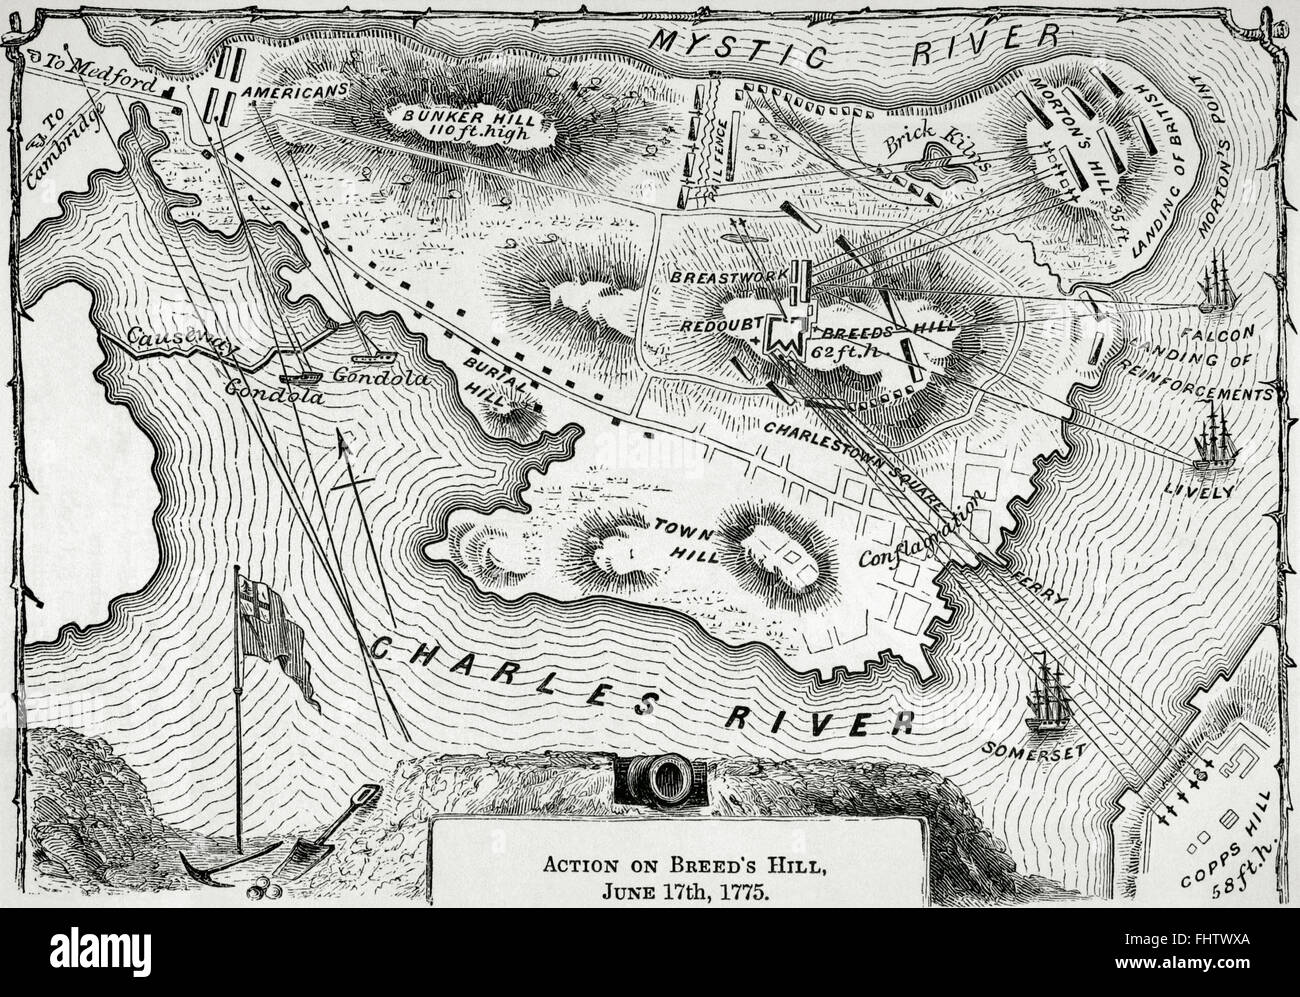 Amerikanischer revolutionärer Krieg. Karte von Action auf Breed's Hill am 17. Juni 1775. Gravur. Stockfoto